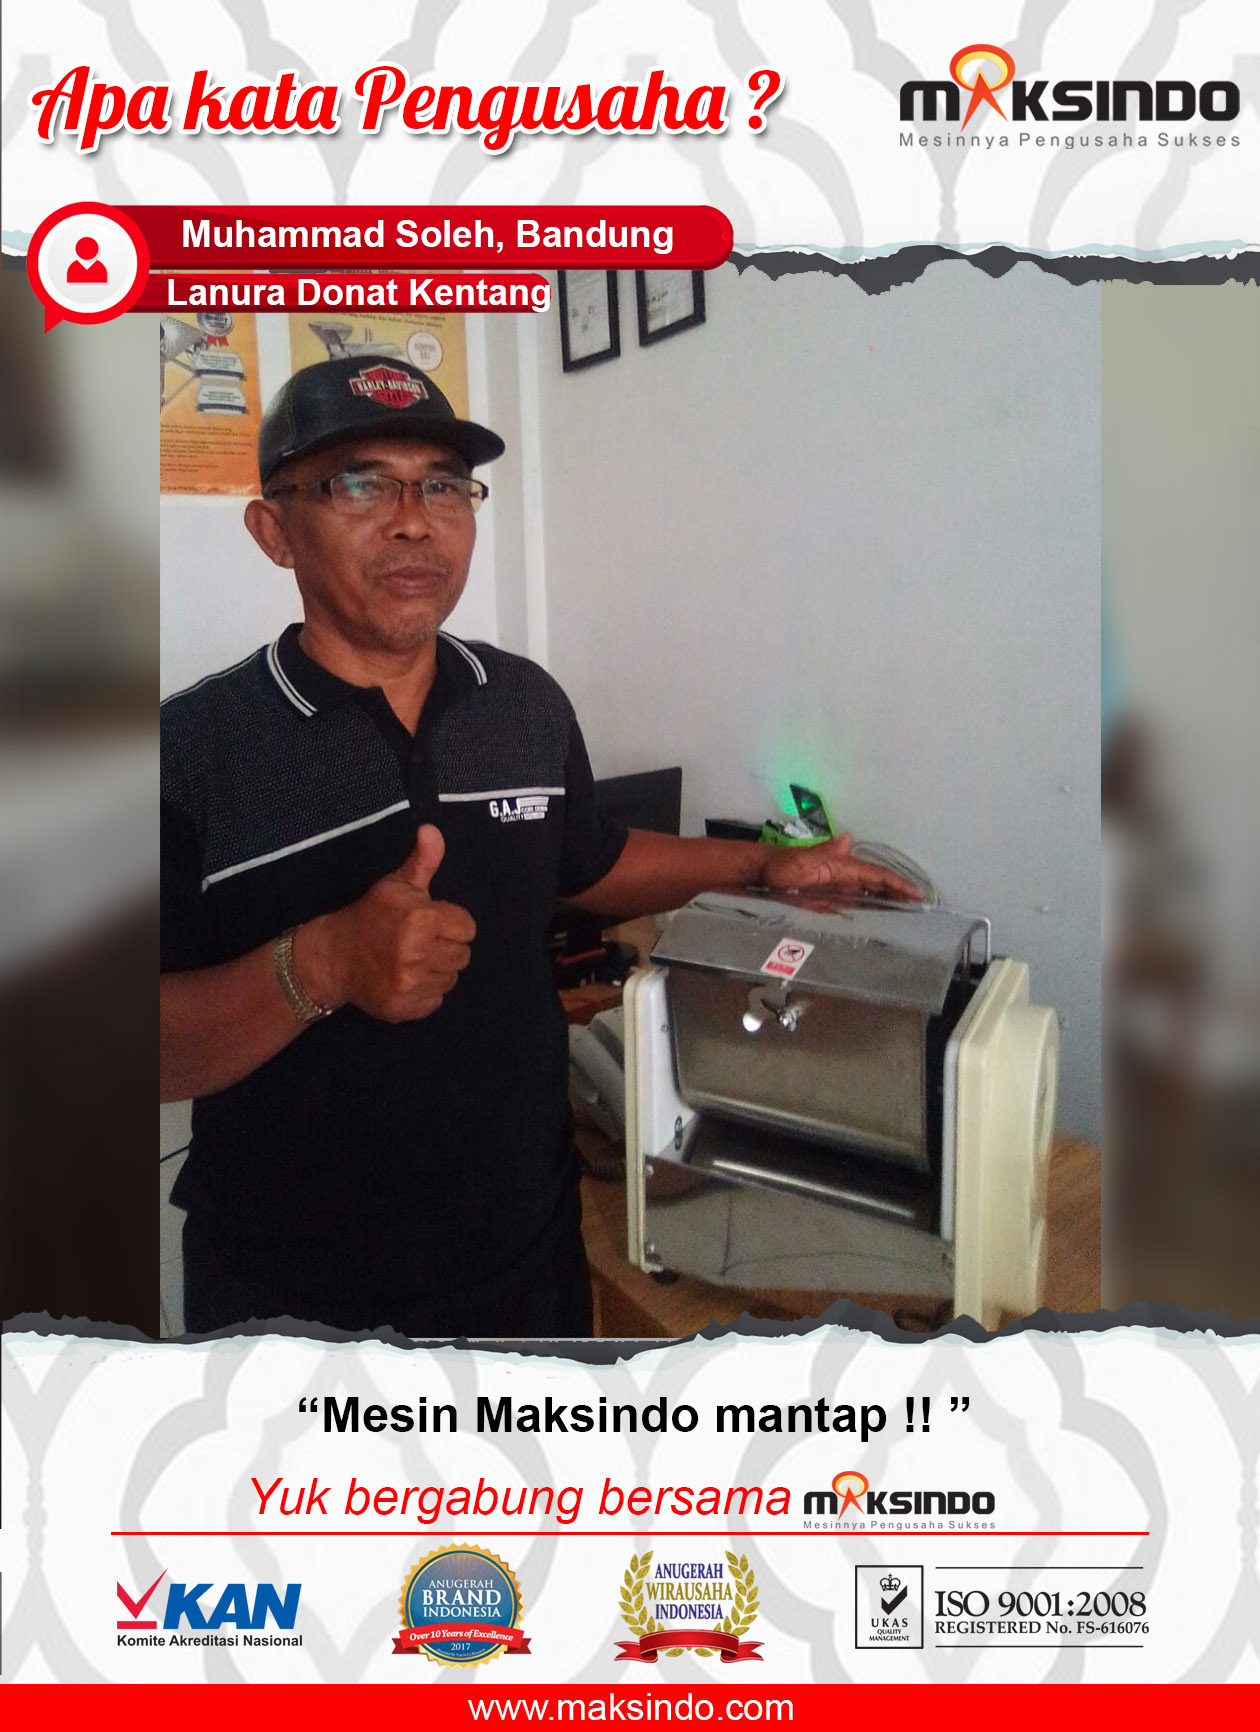 Lanura Donat Kentang : Mesin Dough Mixer Maksindo Memang Mantap